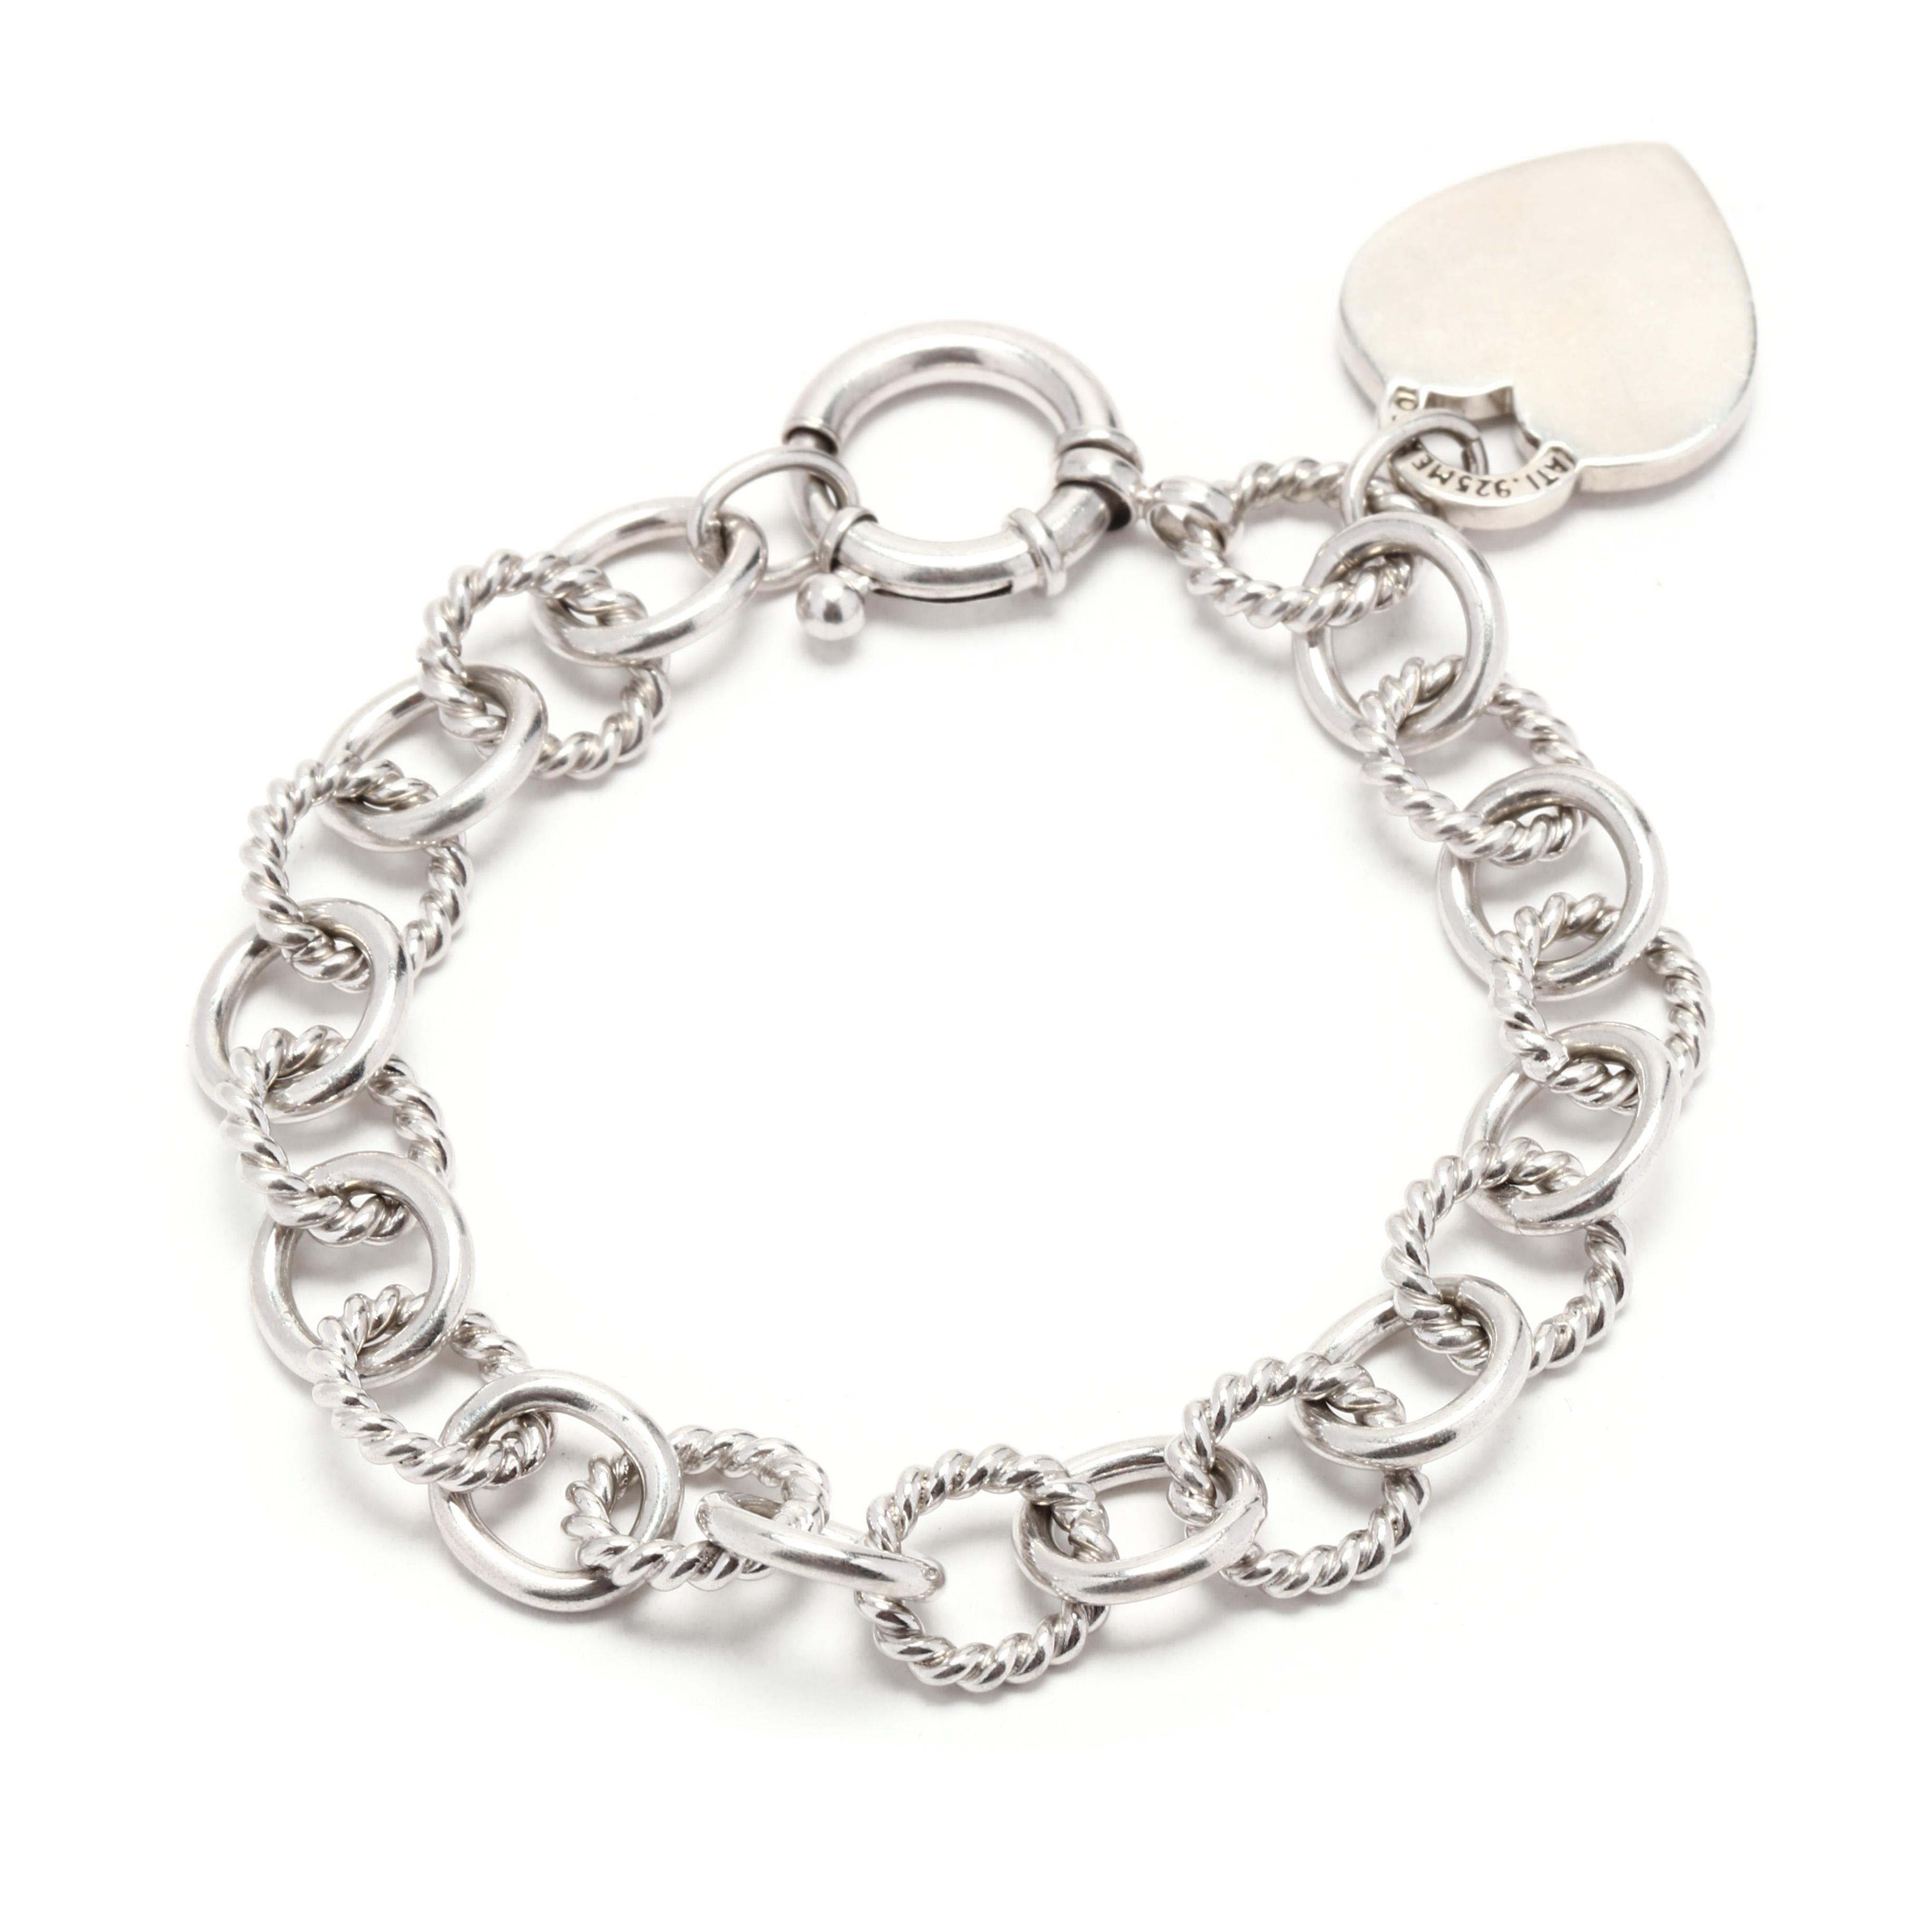 Women's or Men's Oval Link Heart Charm Bracelet, Sterling Silver, Length 7.25 Inch